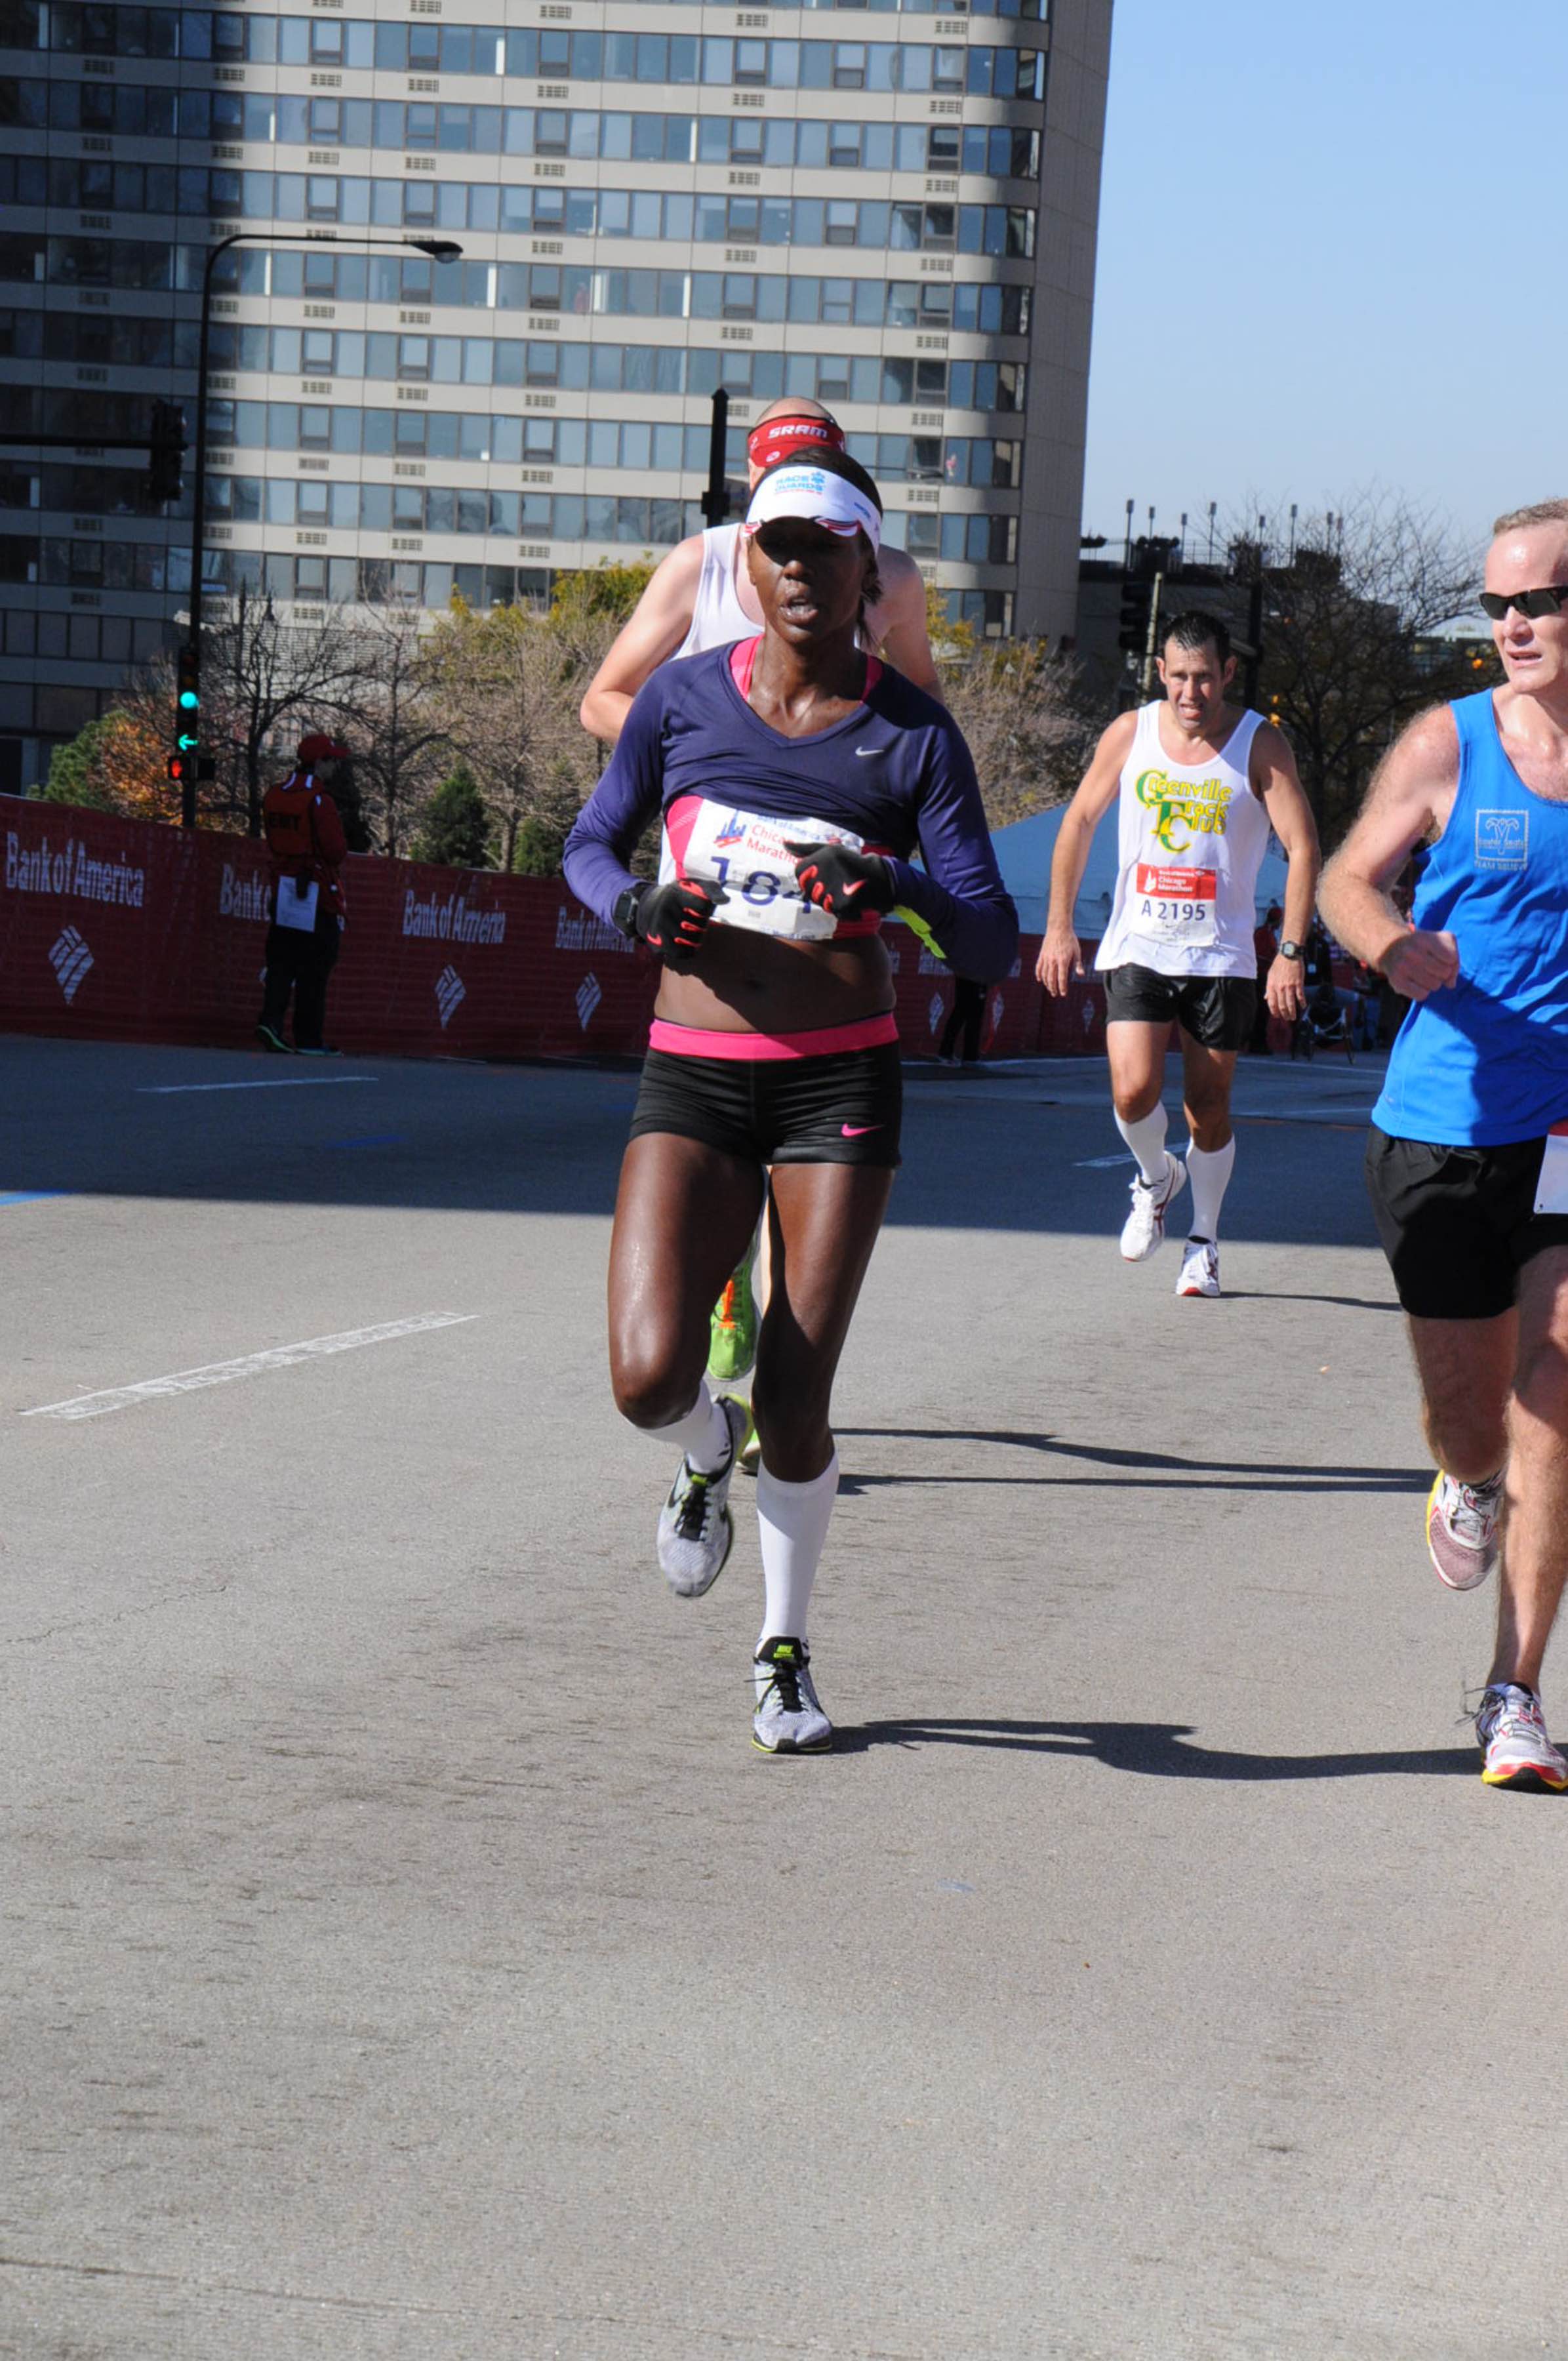 2014 Chicago Marathon: 2:54.58. 2nd place Masters female